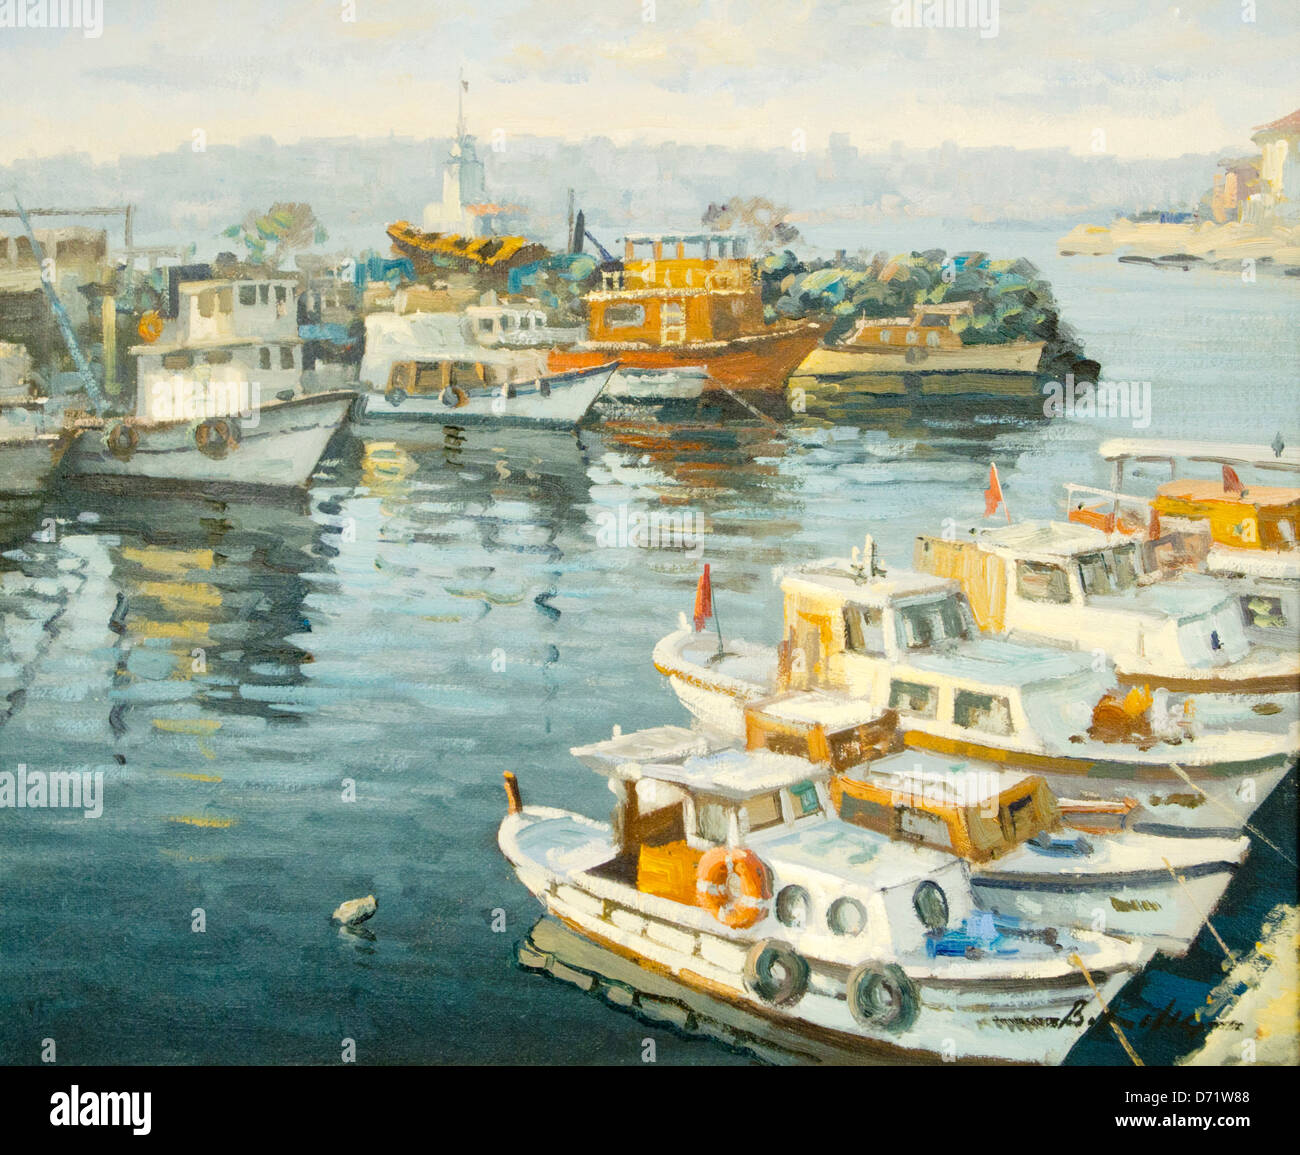 Türkei, Istanbul, Eyüp, Galeri Pierreloti, der Maler Bülent Kilic malt Ölbilder mit Istanbulmotiven. Stock Photo